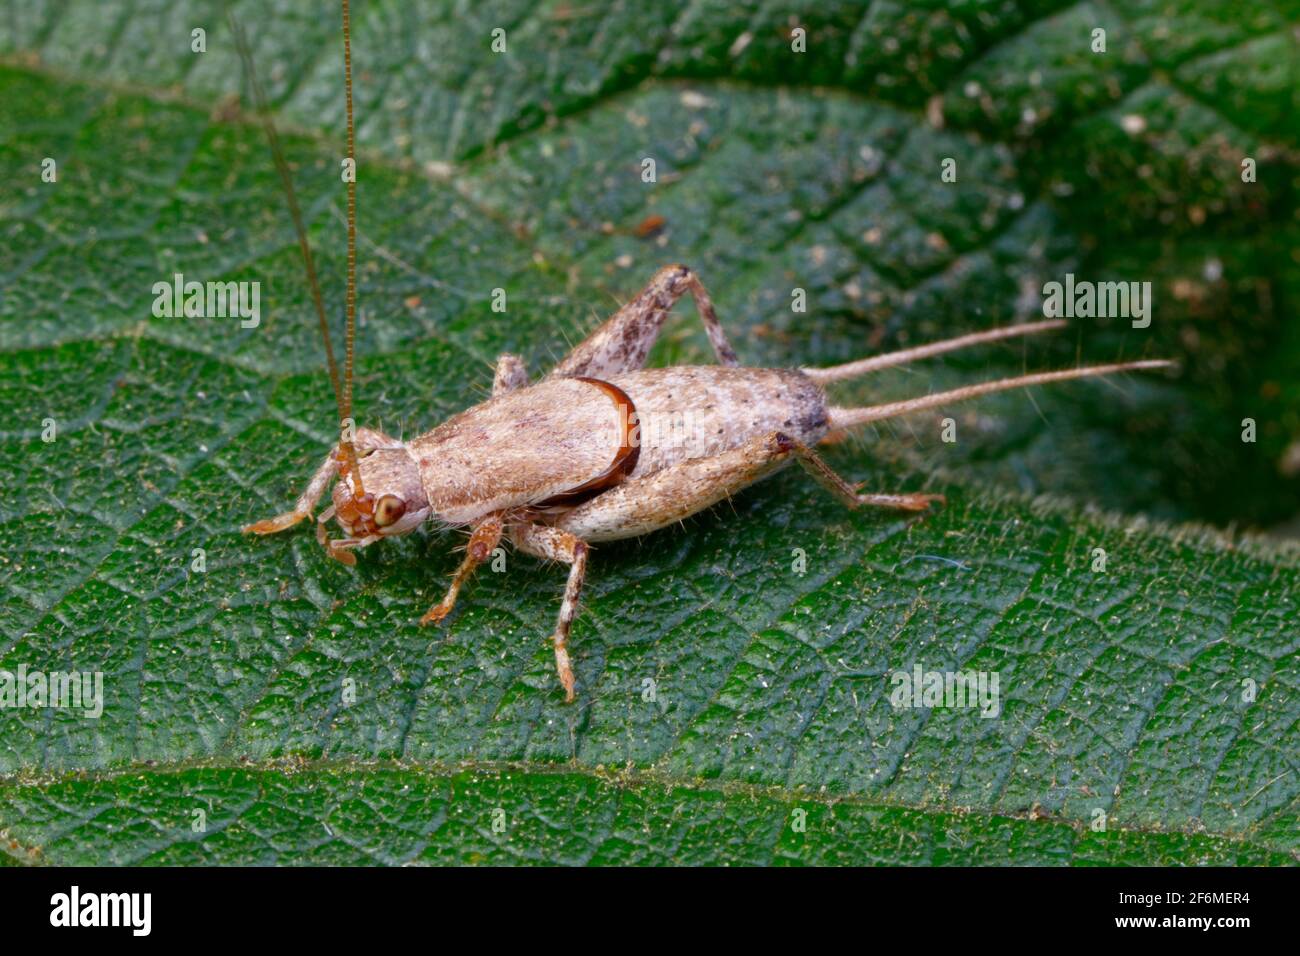 A bush cricket crawling on a leaf. Stock Photo